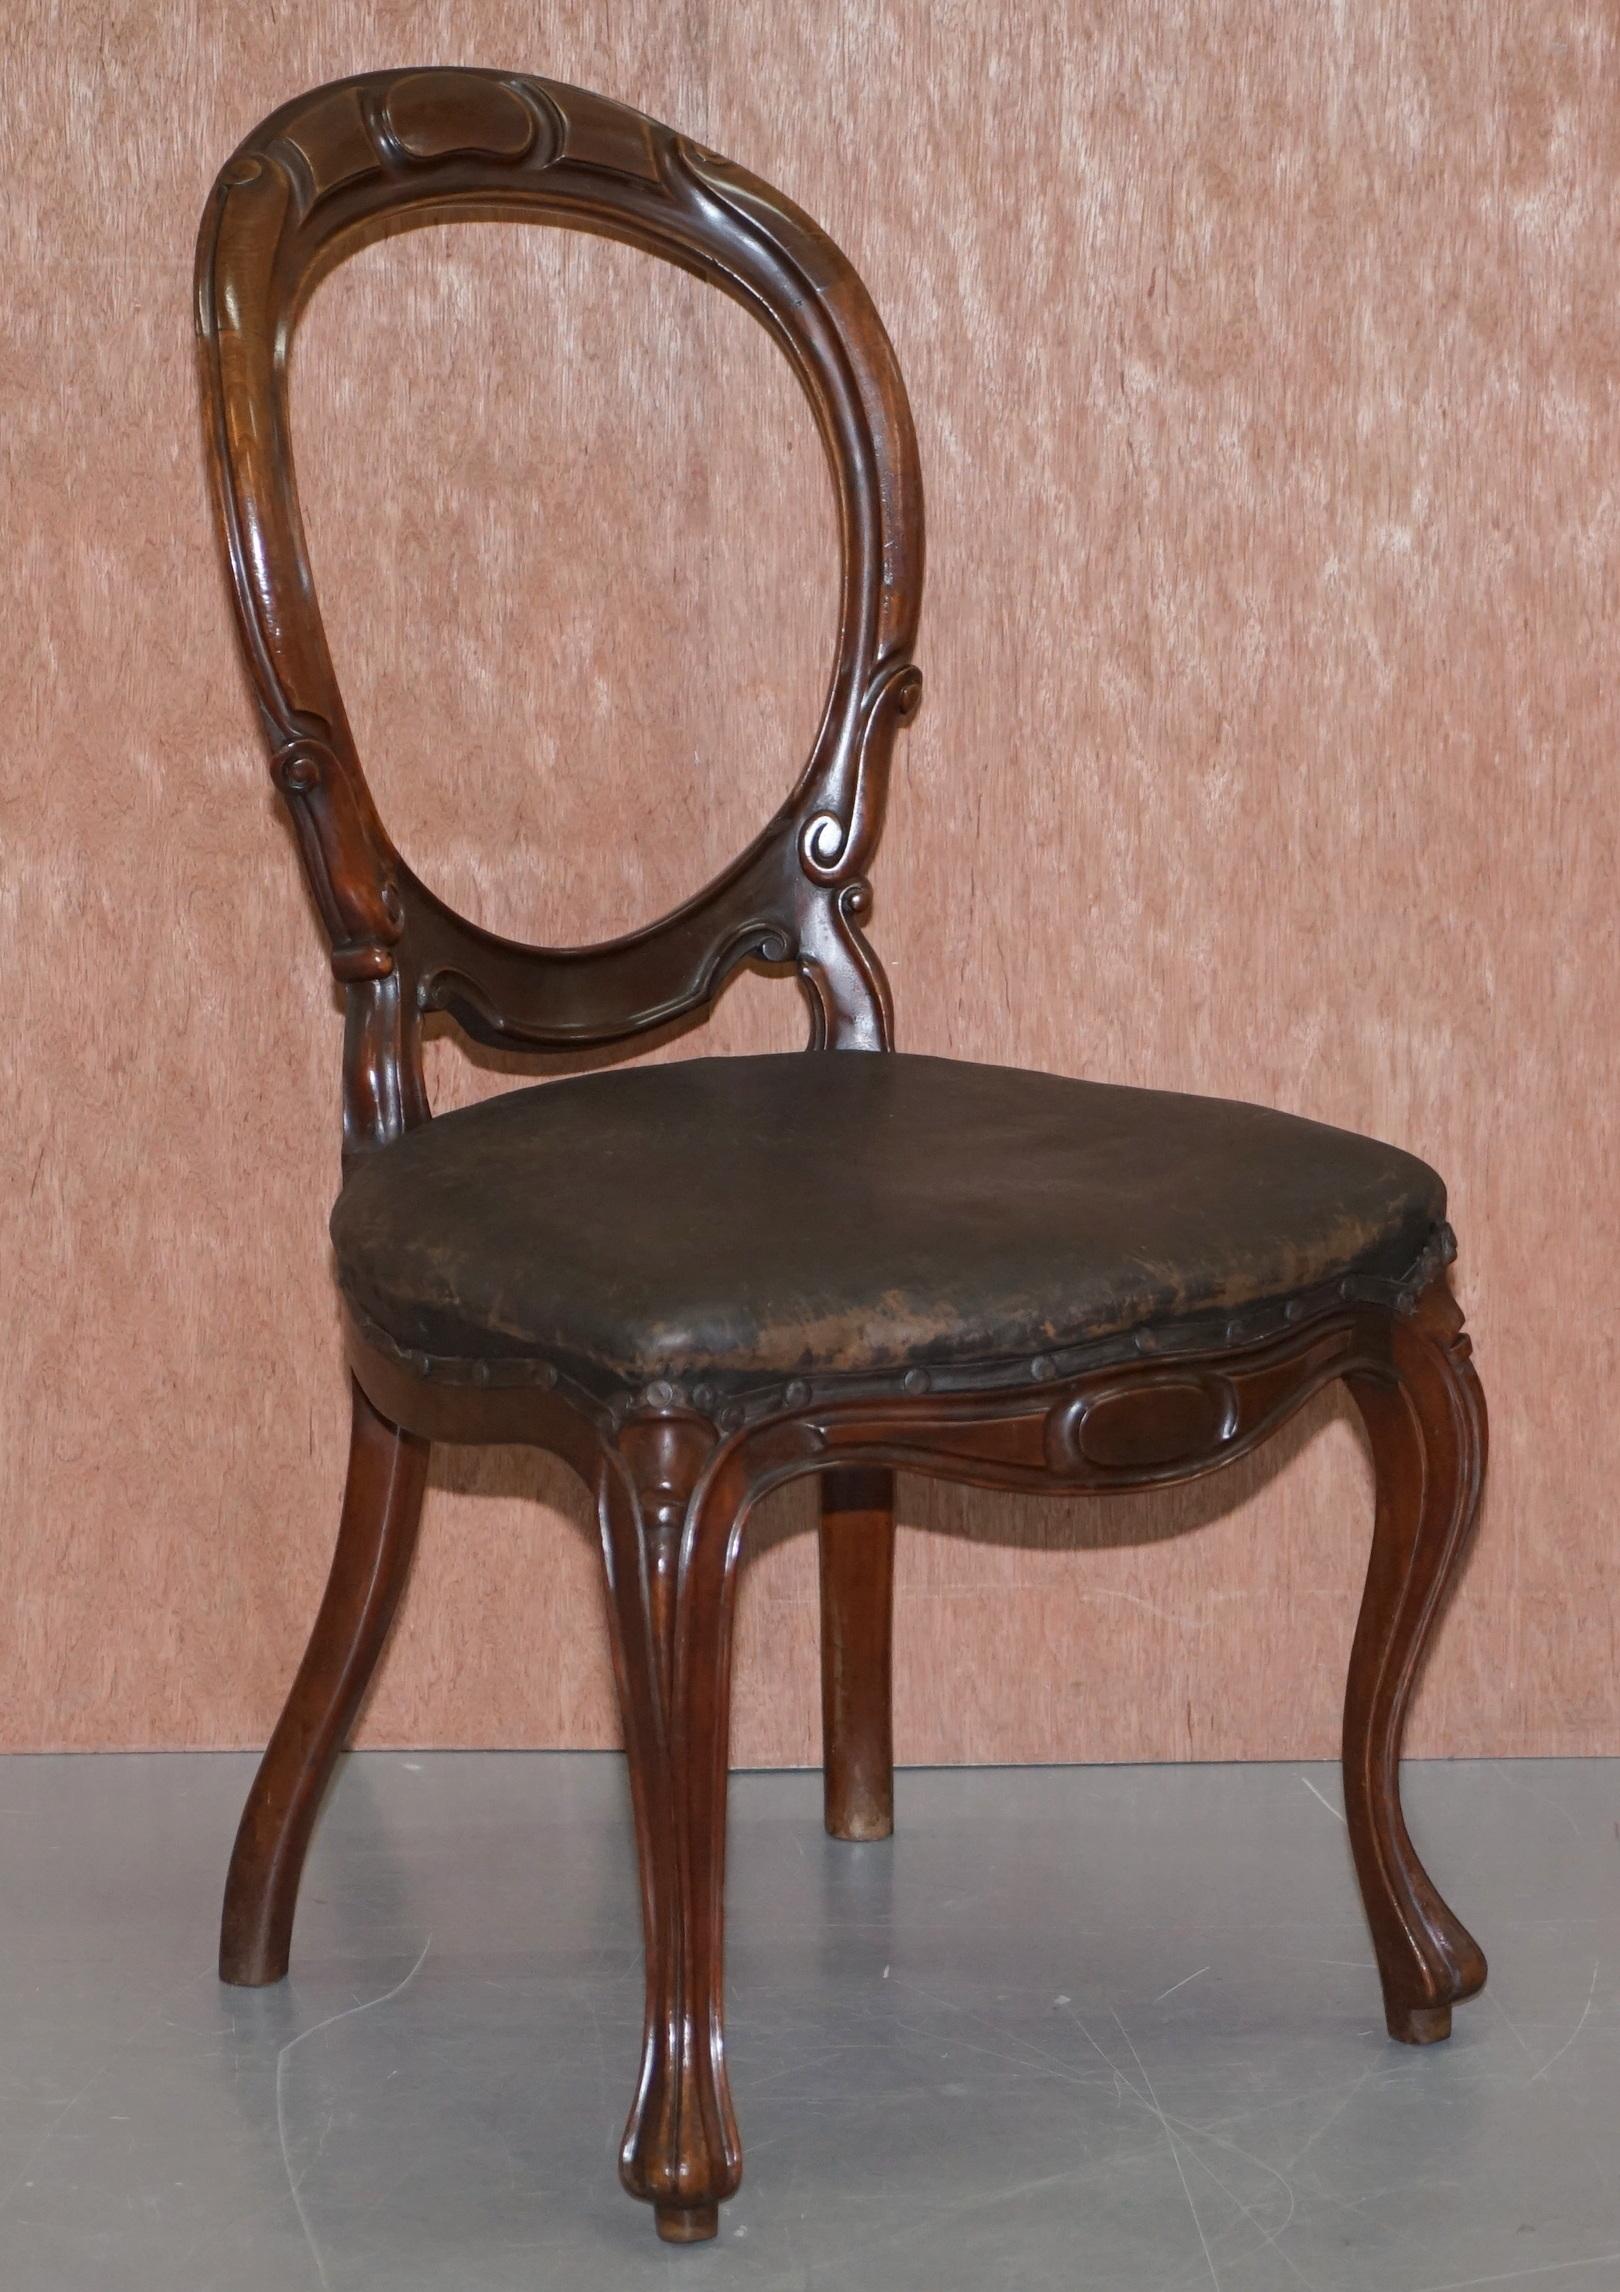 Wir freuen uns, diese schöne Suite sechs handgefertigten original viktorianischen Löffel oder Medaillon zurück Esszimmerstühle mit Original-Polsterung zum Verkauf anbieten

Eine gut aussehende, gut gemachte und dekorative Reihe von